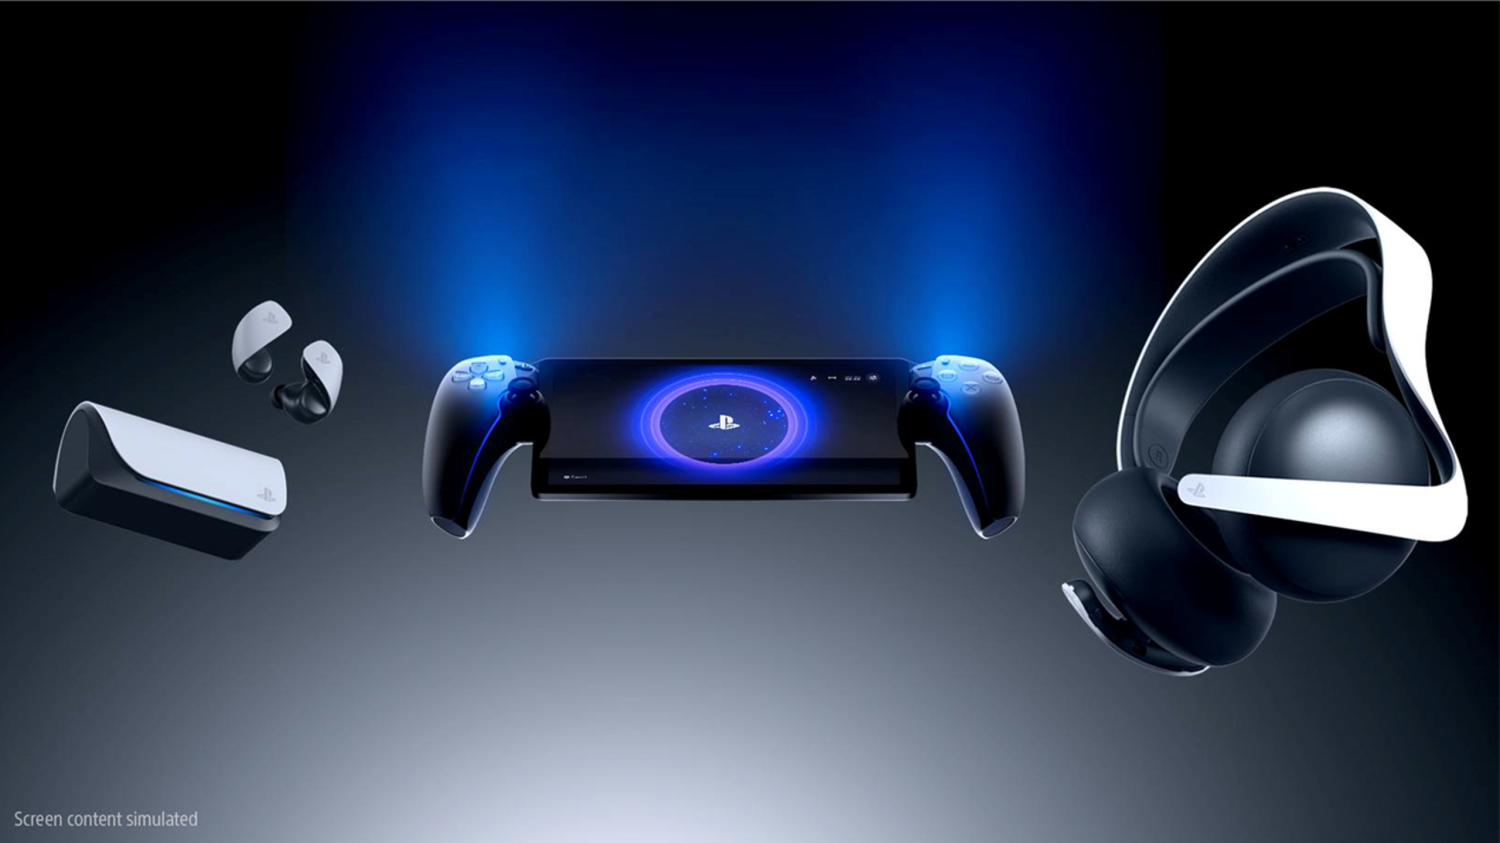 PlayStation Portal possibilita streaming de jogos do PS5 sem uso de  televisão - Tecnologia e Games - Folha PE